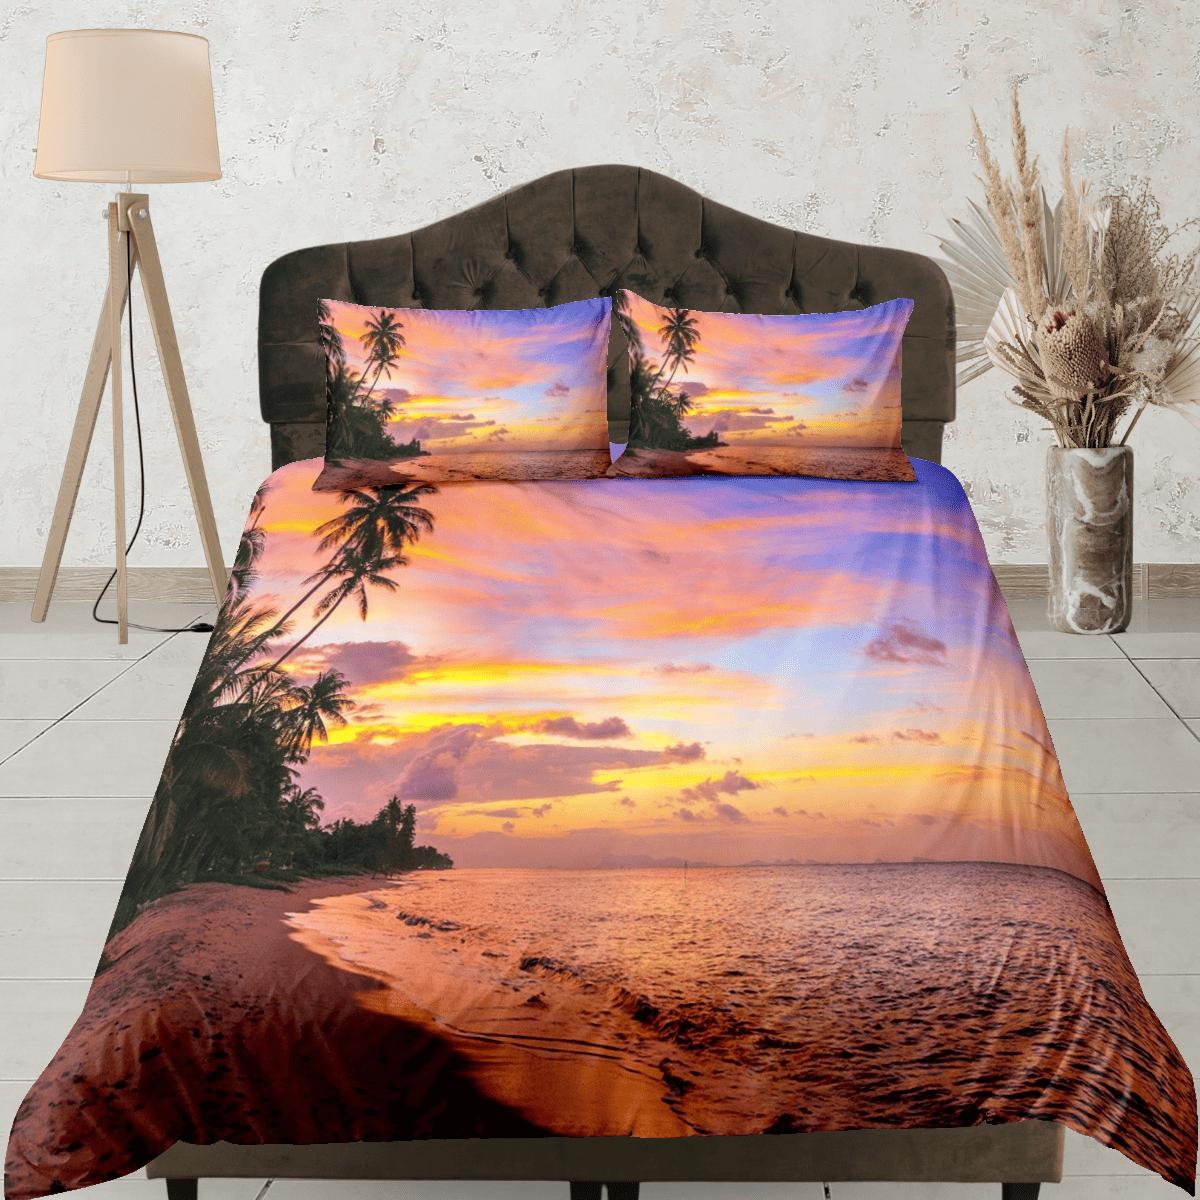 daintyduvet Sunset colors coastal grandma duvet cover nautical bedding set full queen king, aesthetic beach room decor, ocean lover gift seaman